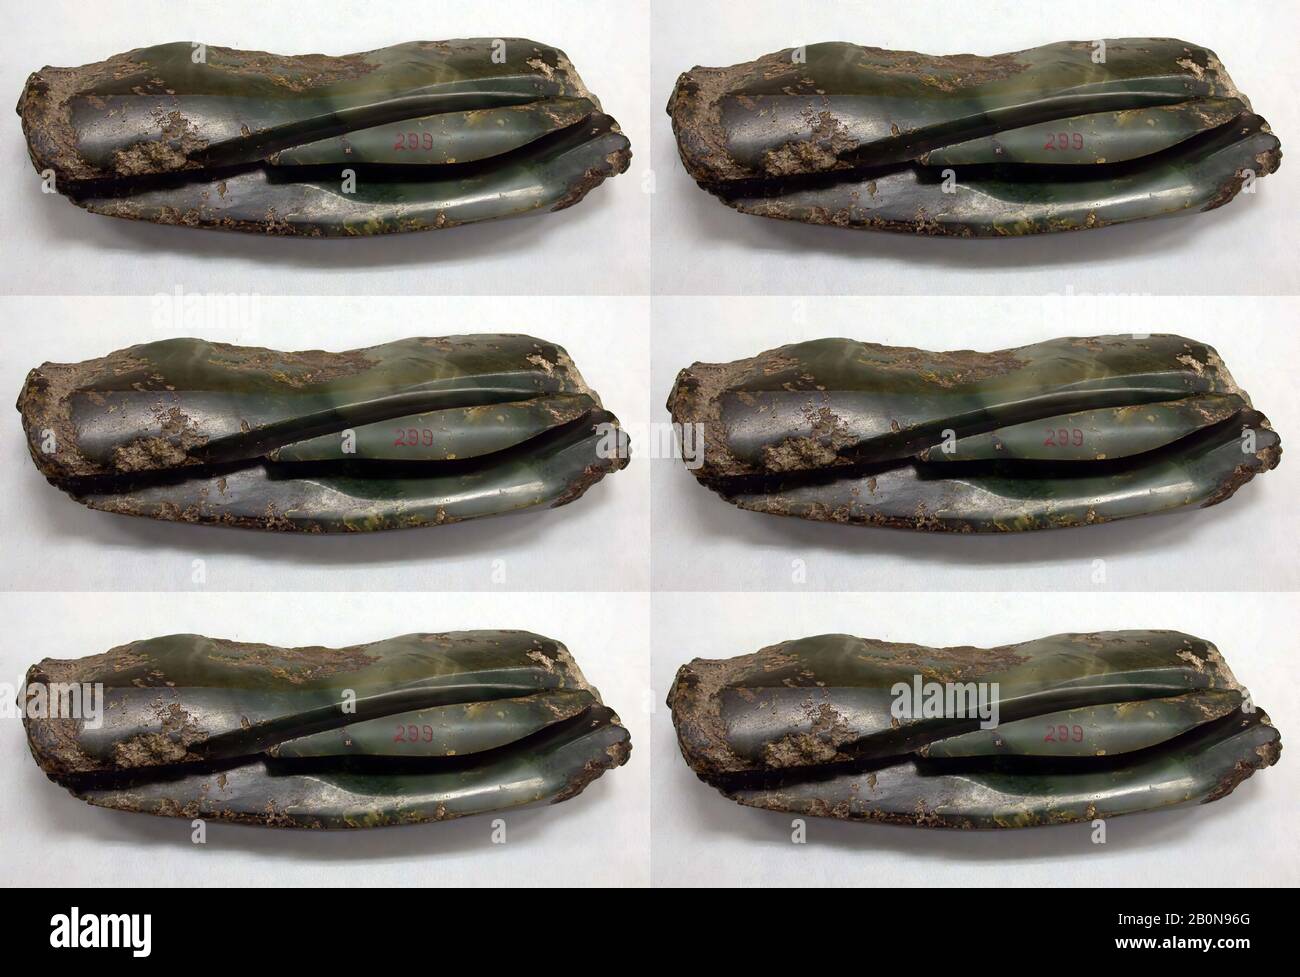 Pezzo Parzialmente Lavorato Di Jadeite, Nuova Zelanda, Nuova Zelanda, Jadeite, L. 11 1/4 In. (28,5 cm); W. 3 15/16 in. (10 cm); D. 1 7/8 in. (4,8 cm), Giada Foto Stock